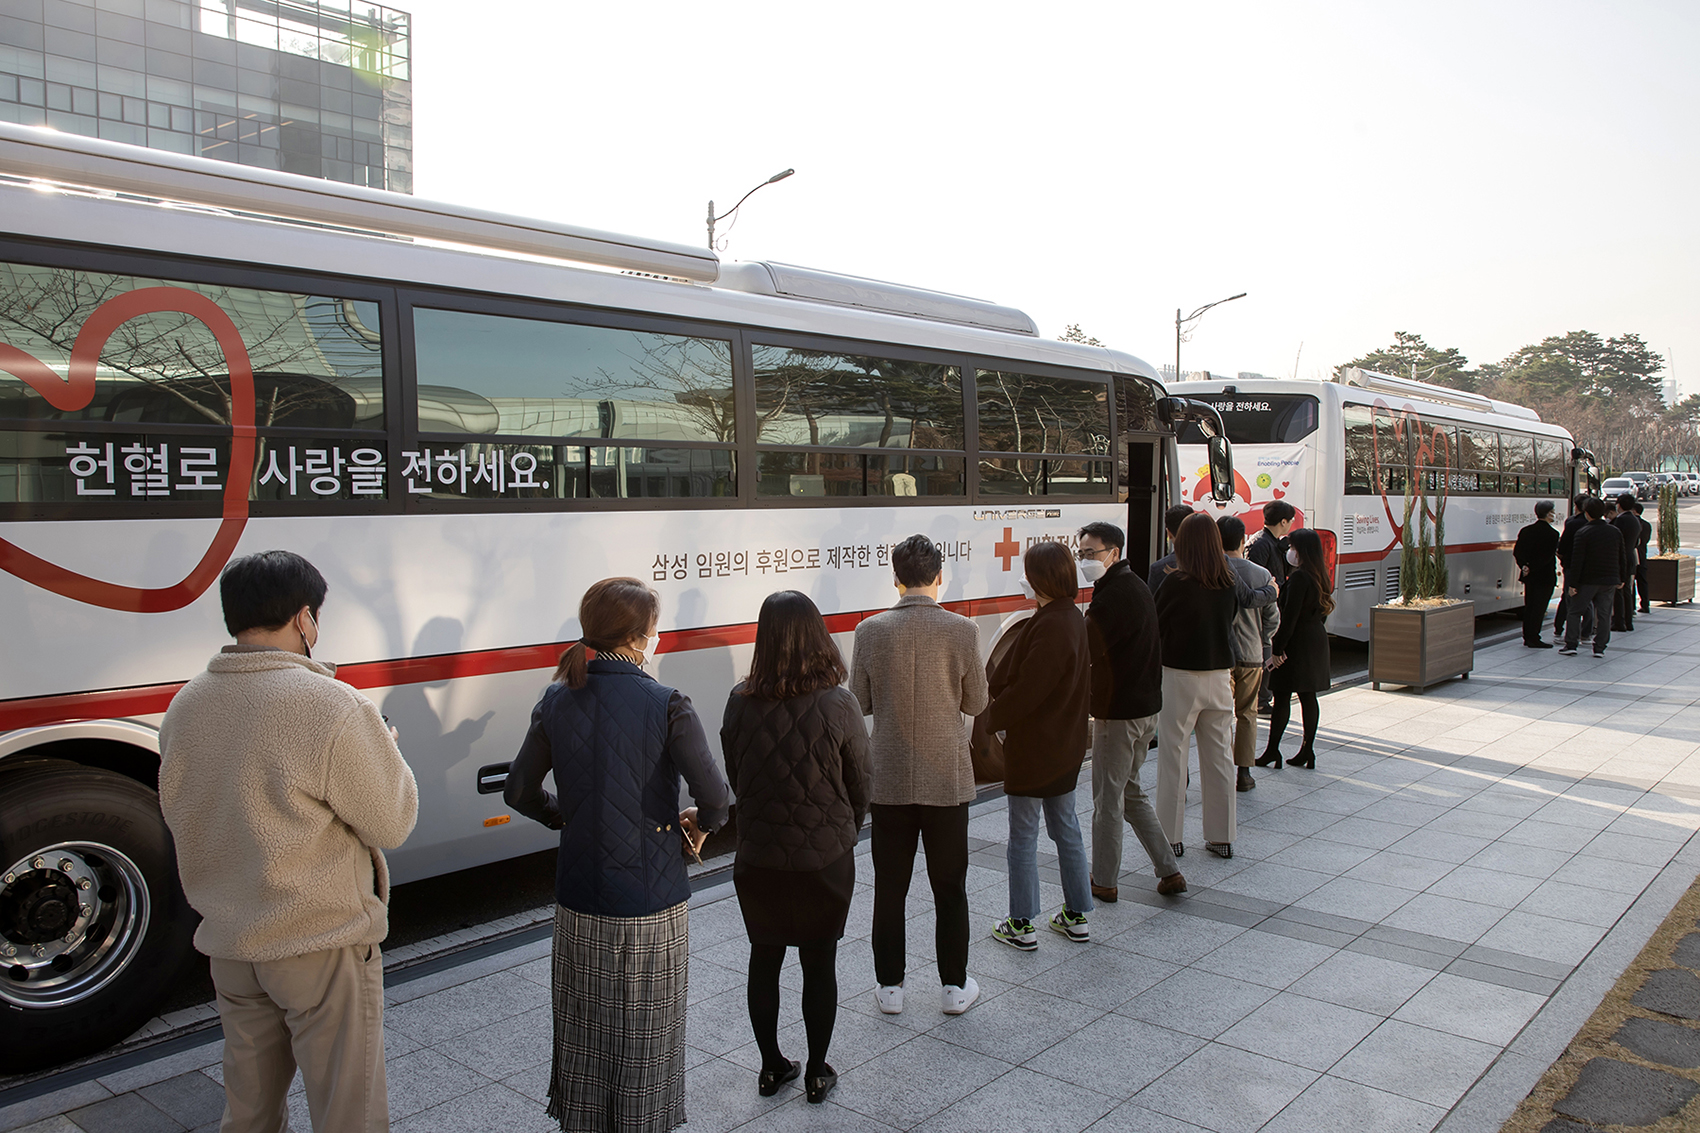 삼성은 각 계열사 임원들이 특별격려금 10%씩을 기부해 조성한 100억원으로 헌혈버스를 올해부터 10년간 매년 4대씩 기부한다고 23일 밝혔다. 사진은 헌혈에 동참하는 삼성 직원들 모습. 삼성전자 제공